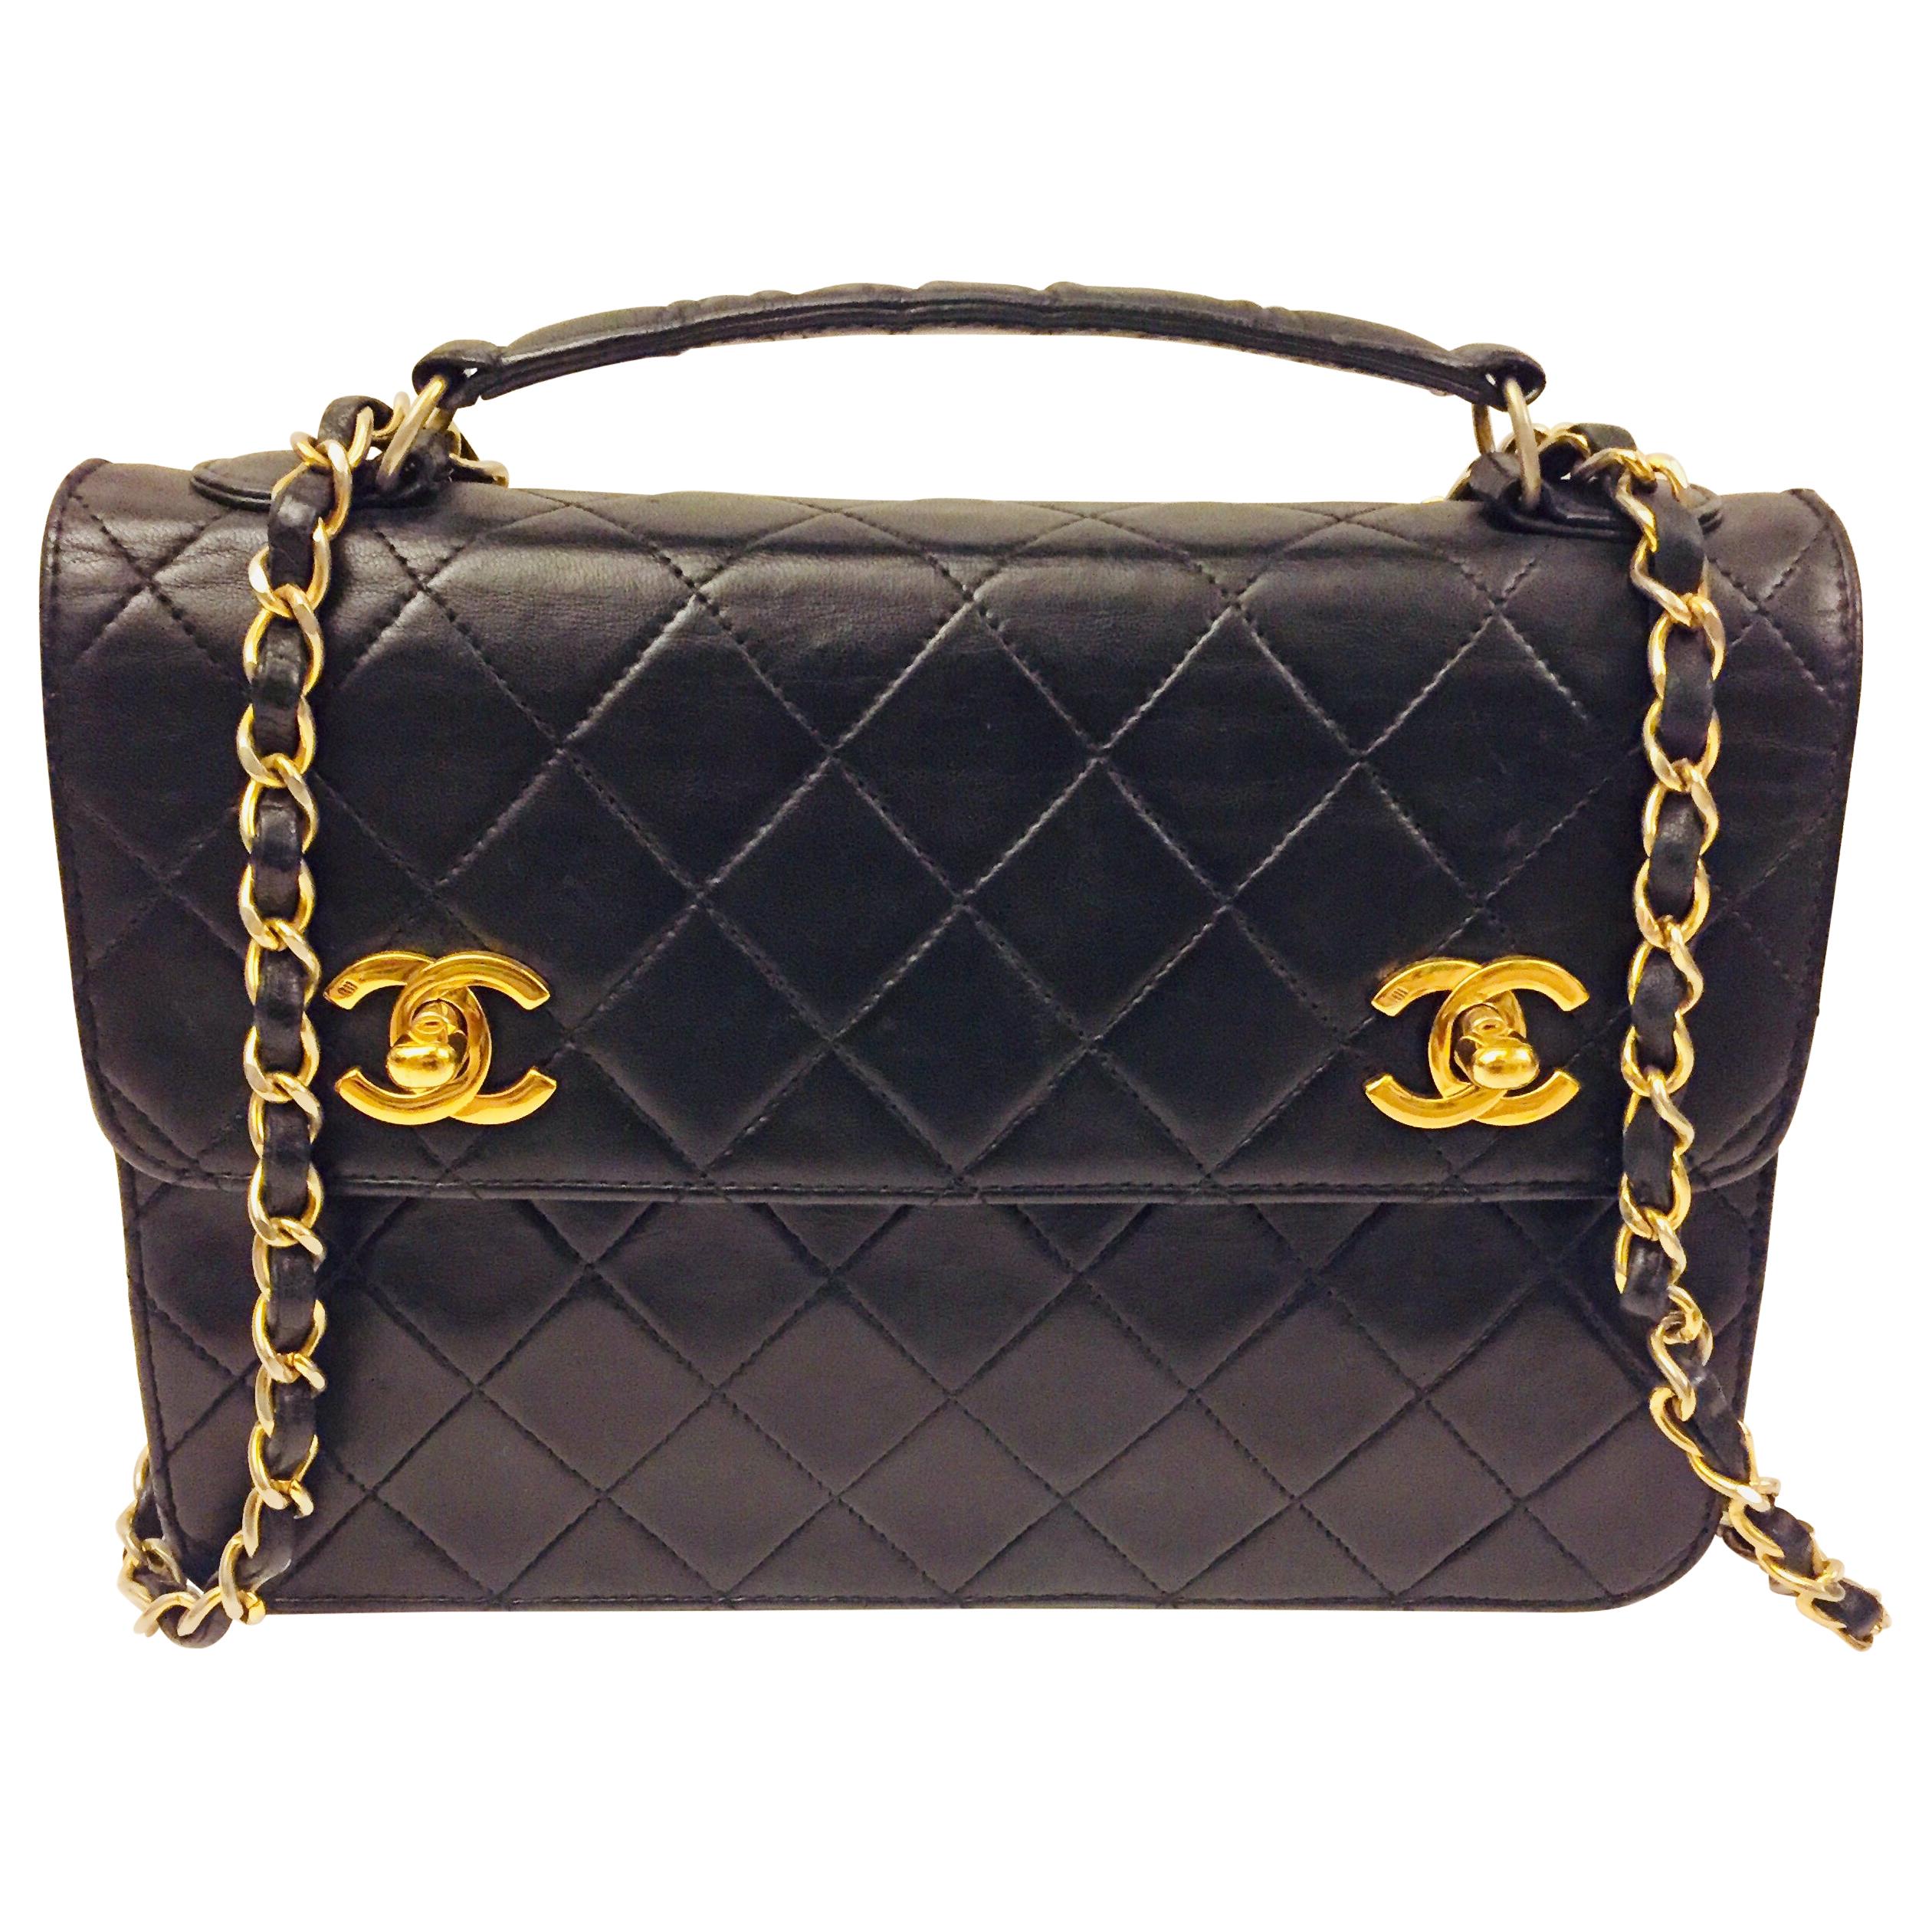 Chanel Double “CC” shoulder bag